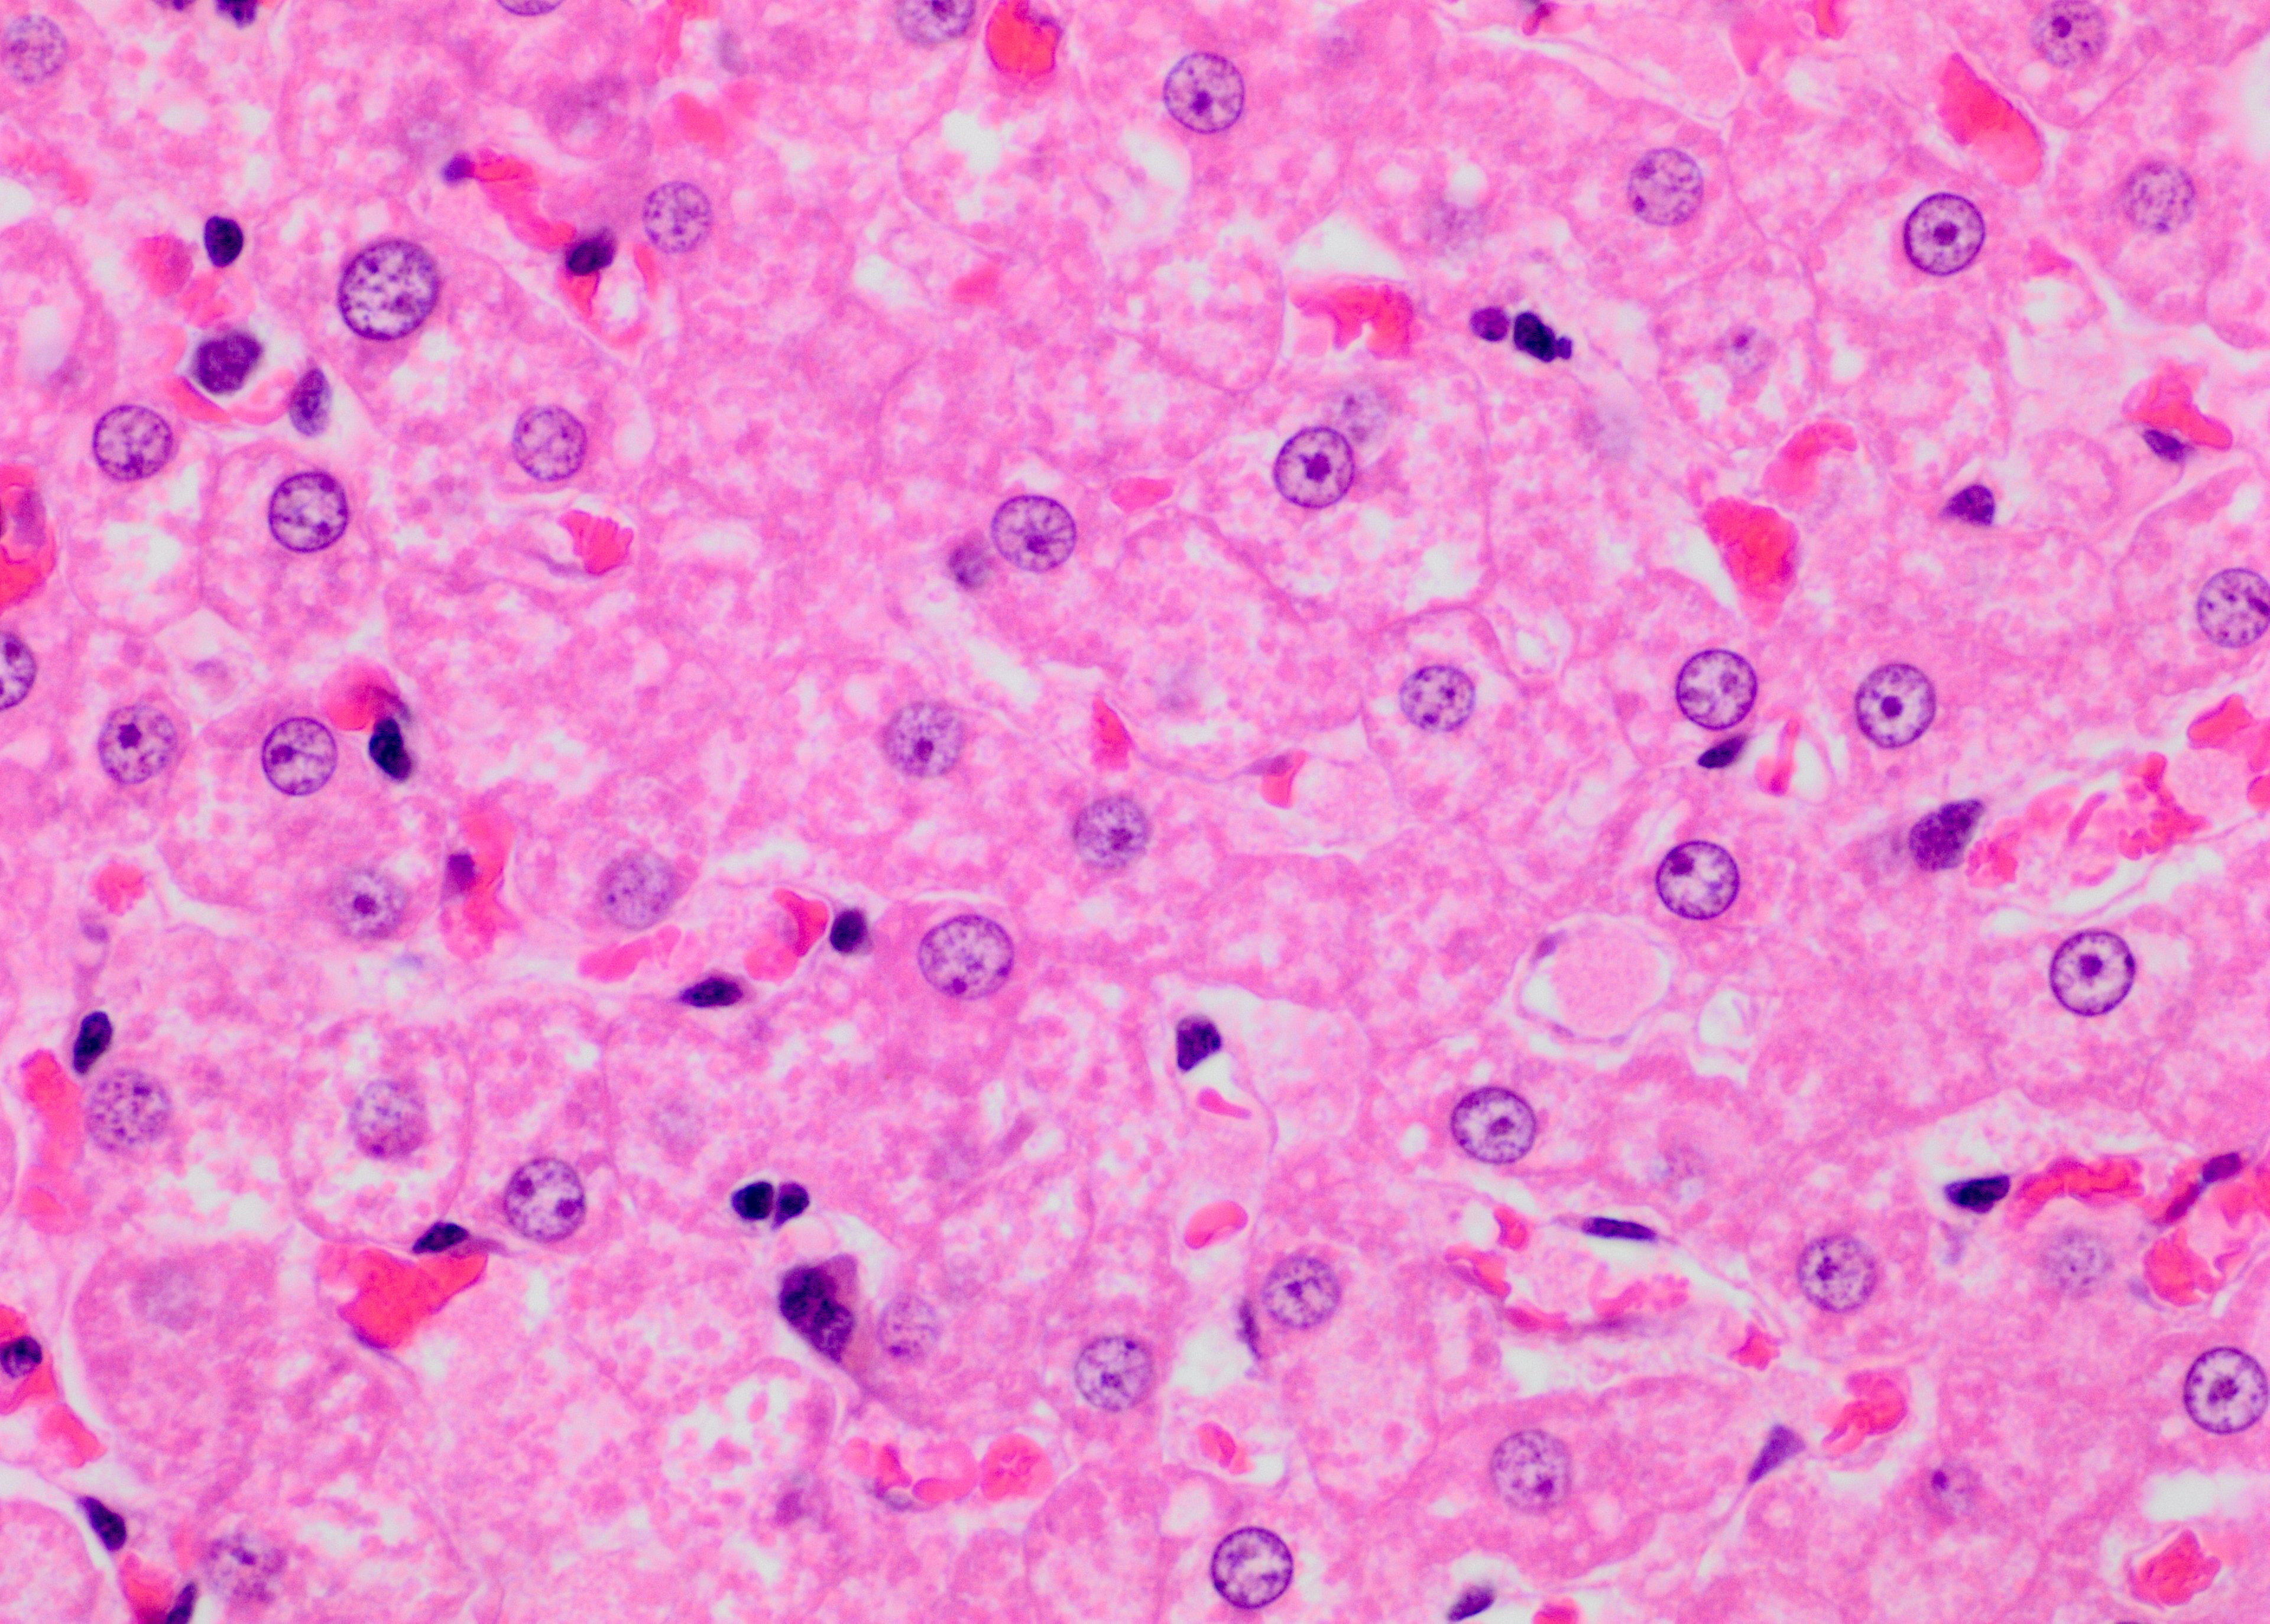 hepatocyte histology